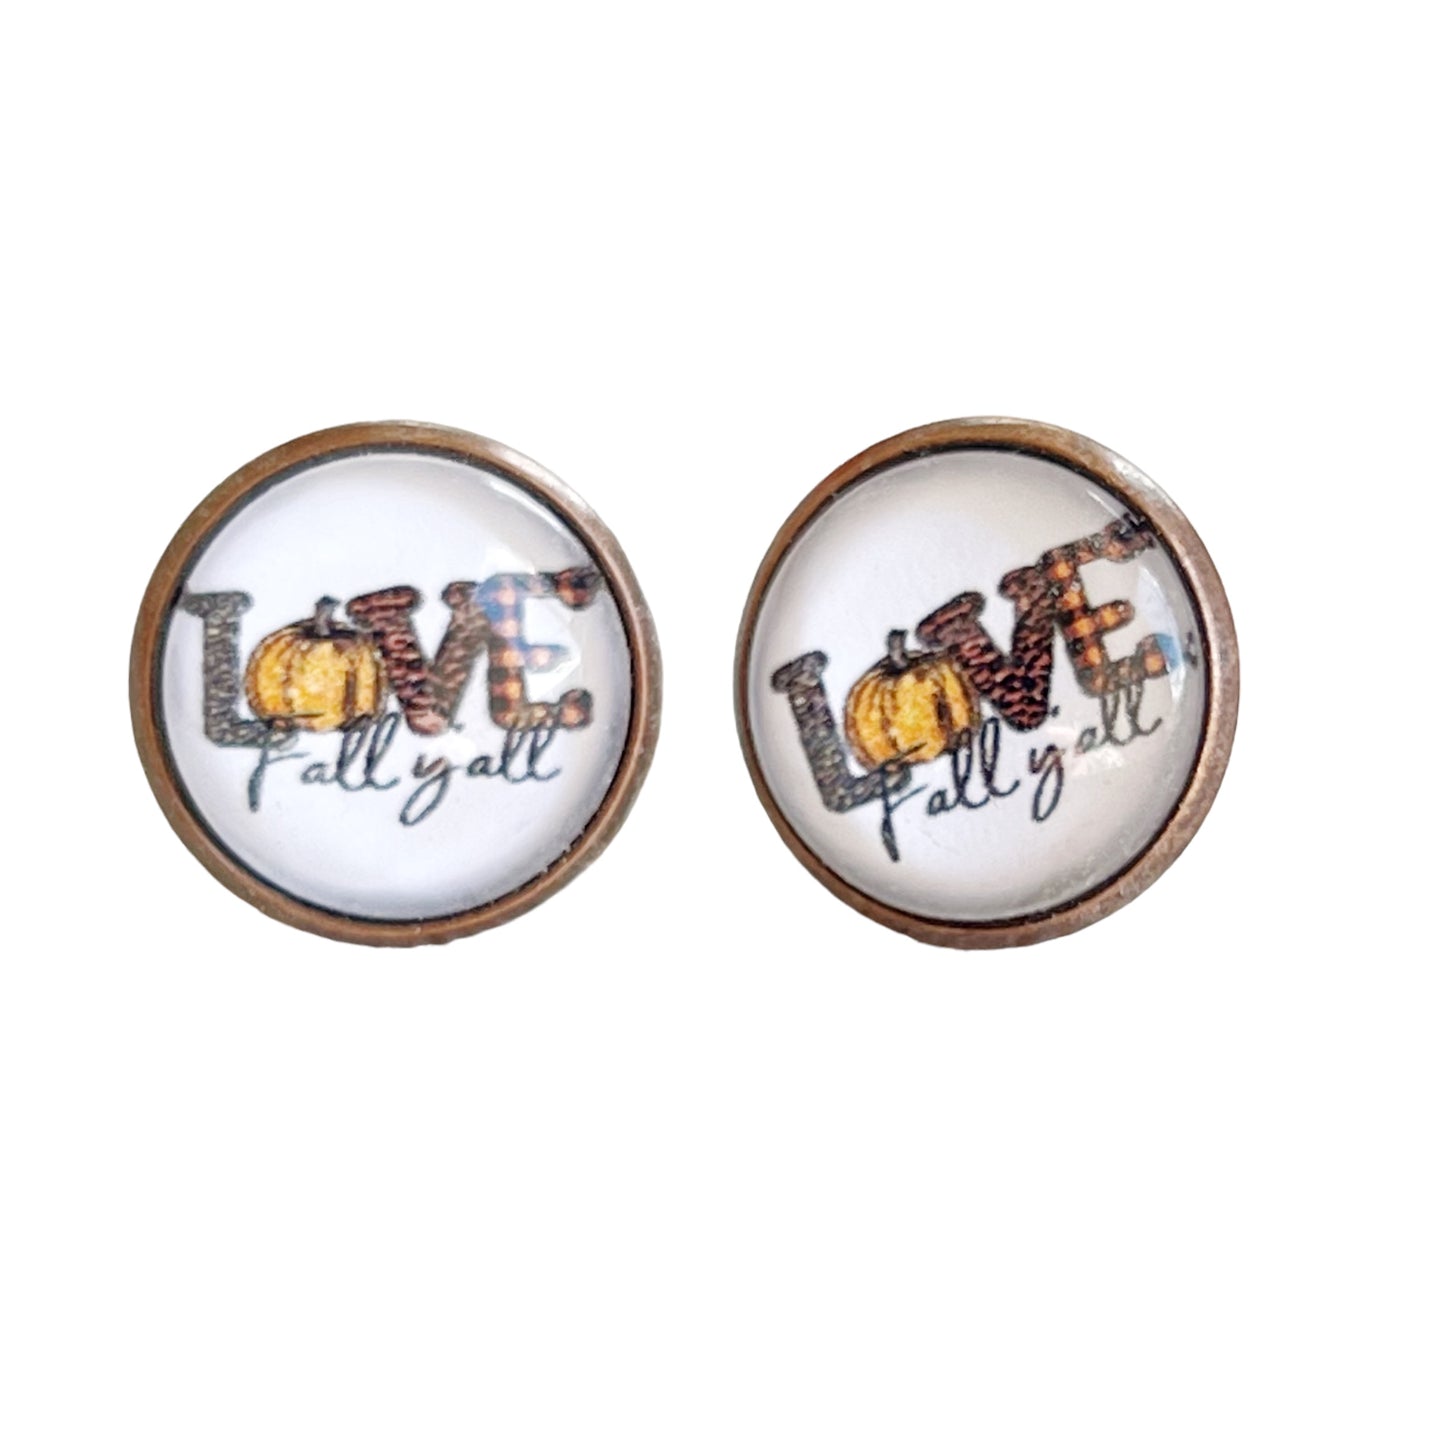 Love Fall Y’all Pumpkin Brass Stud Earrings - Festive & Stylish Accessories